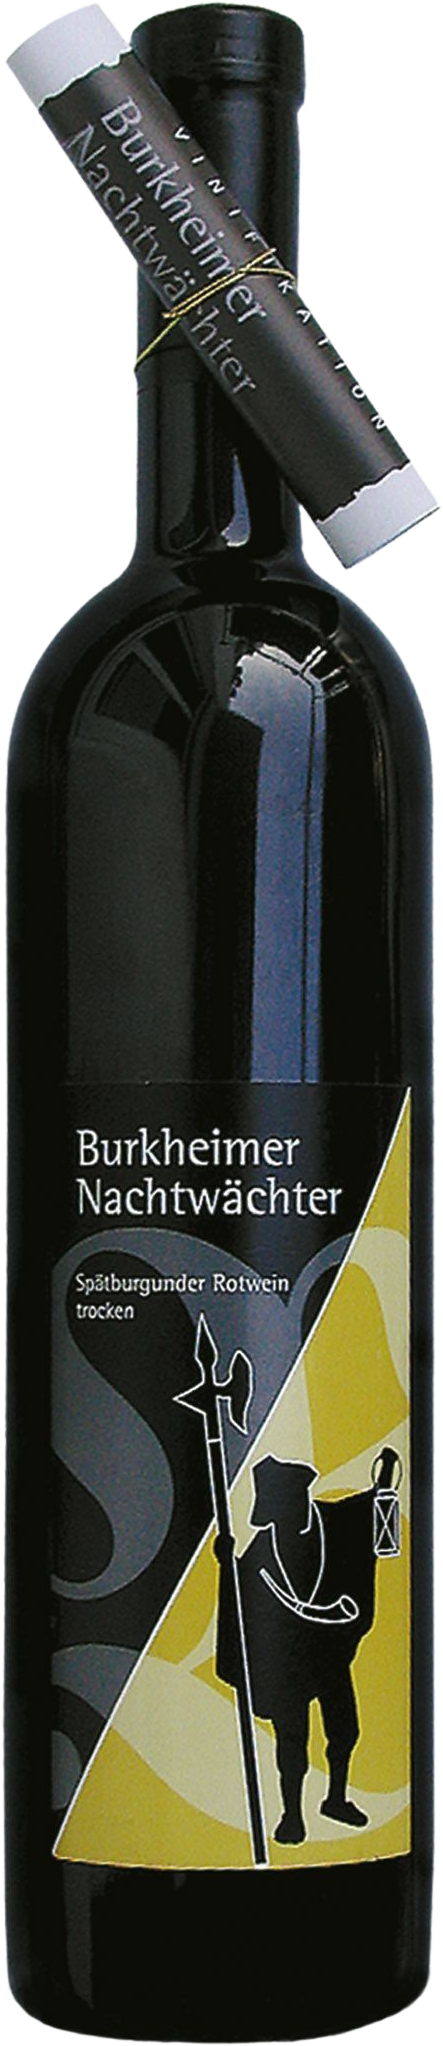 Burkheimer - - am Winzer Feuerberg Falstaff Falstaff 2019 Nachtwächter Kaiserstuhl Spätburgunder Burkheim